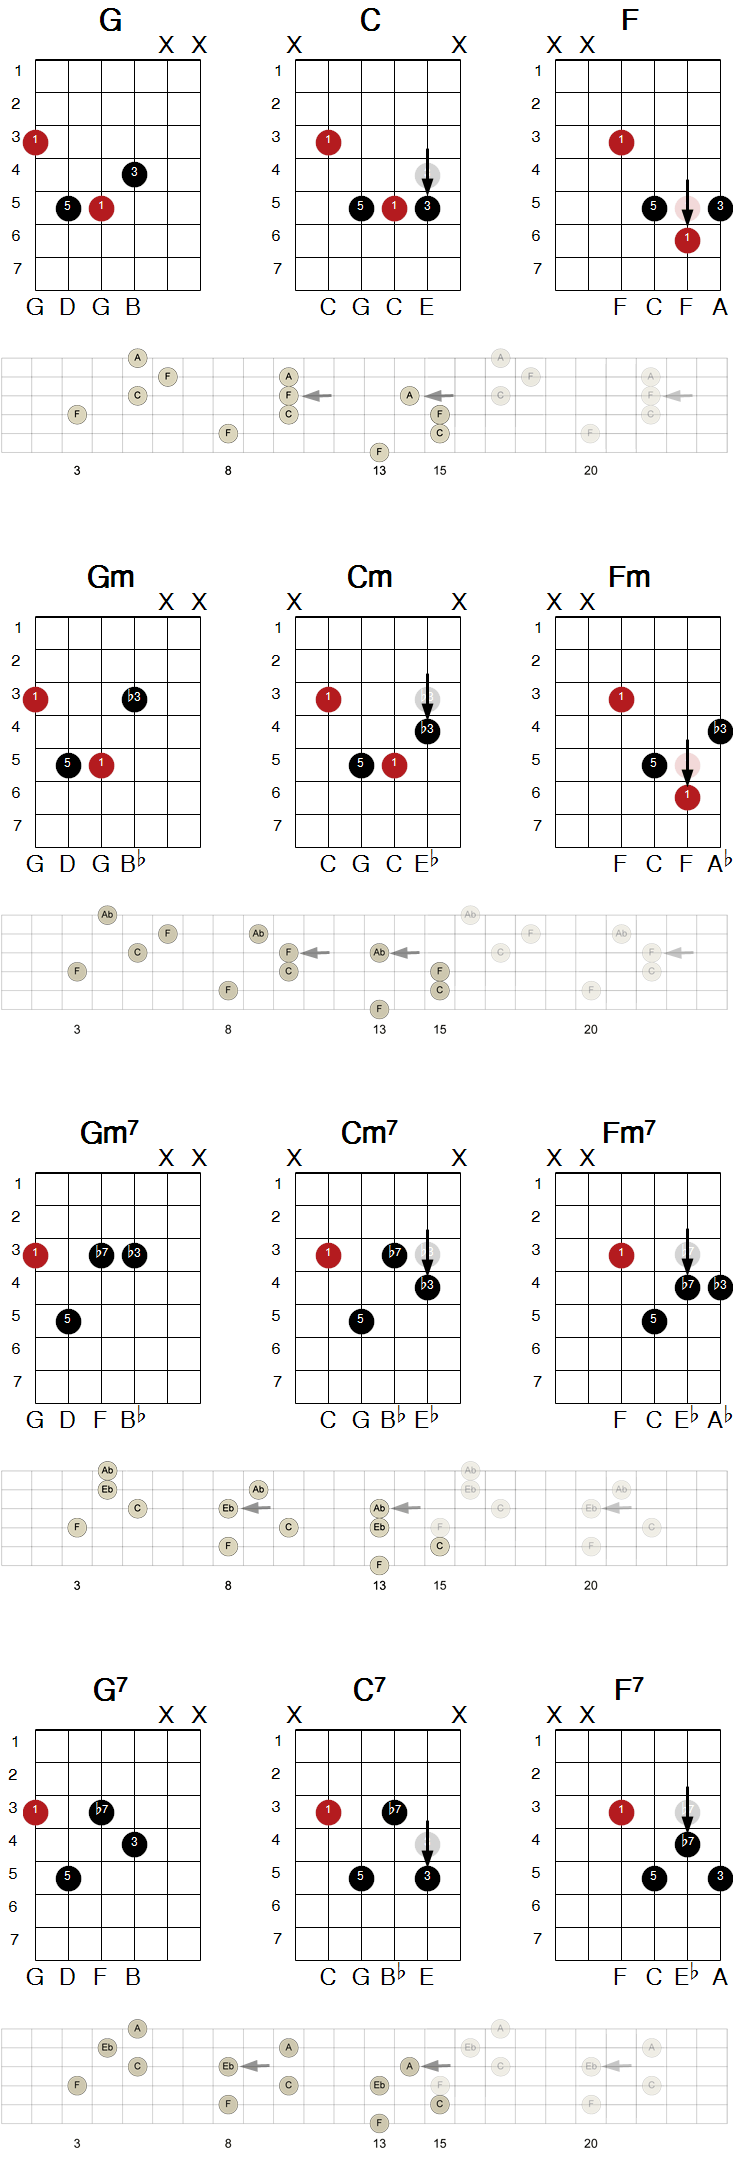 Eksempel på transponering av gitargrep vertikalt til forskjellige grupper av strenger